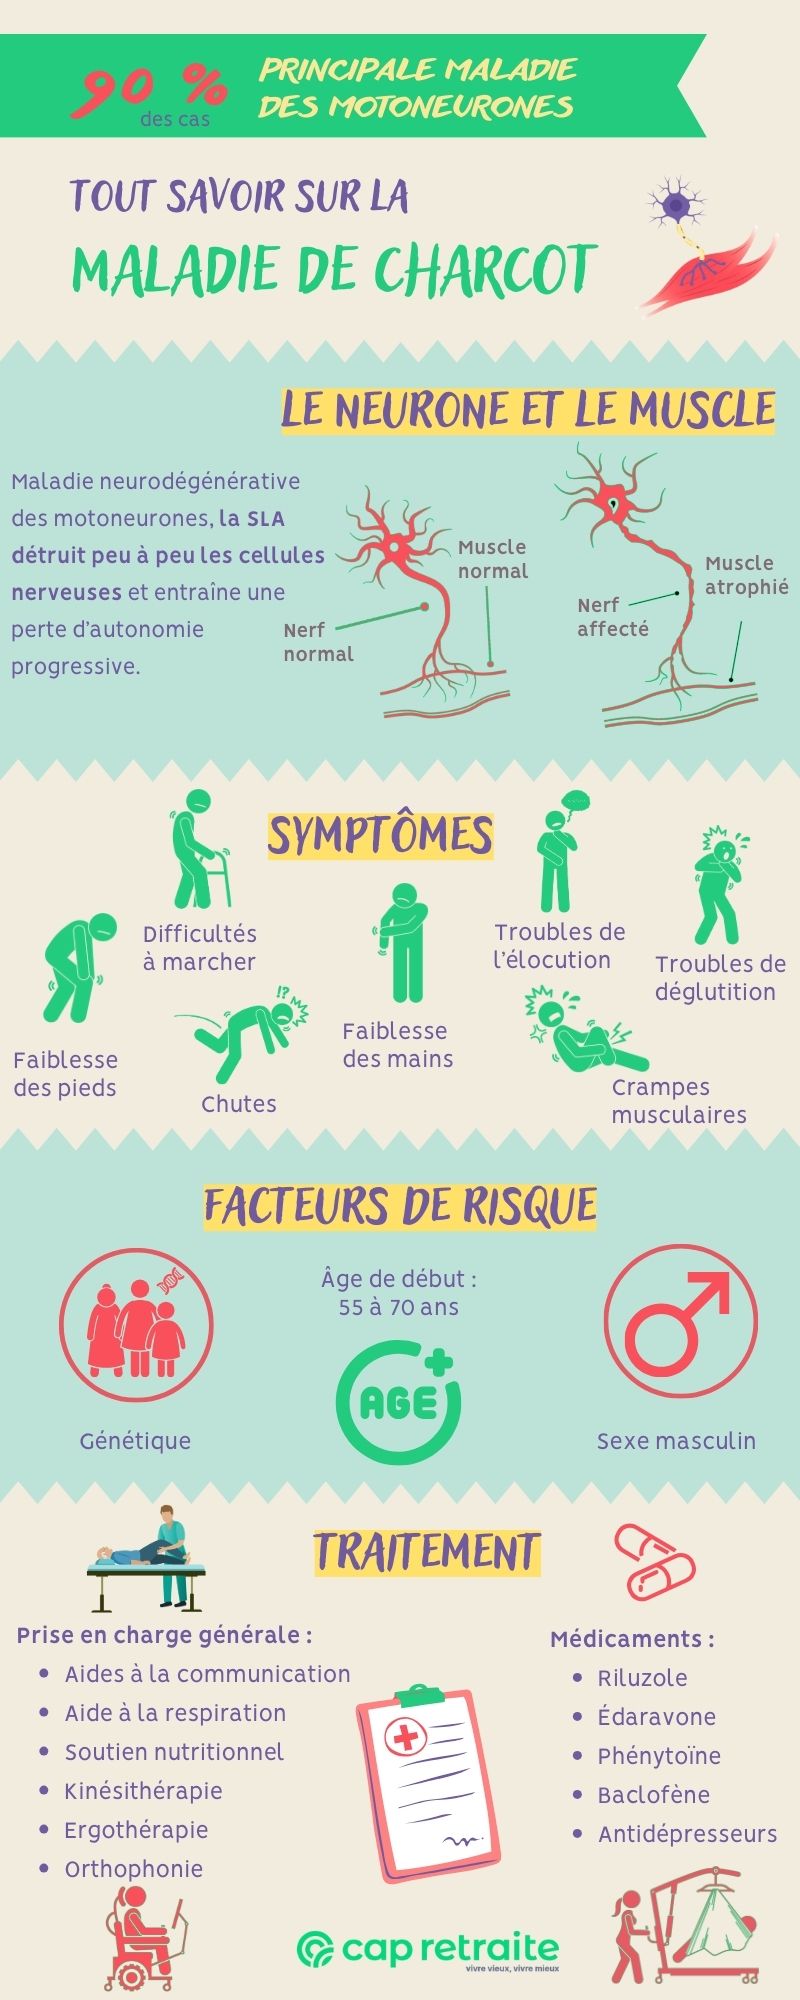 Infographie sur les symptômes et traitements de la maladie de Charcot